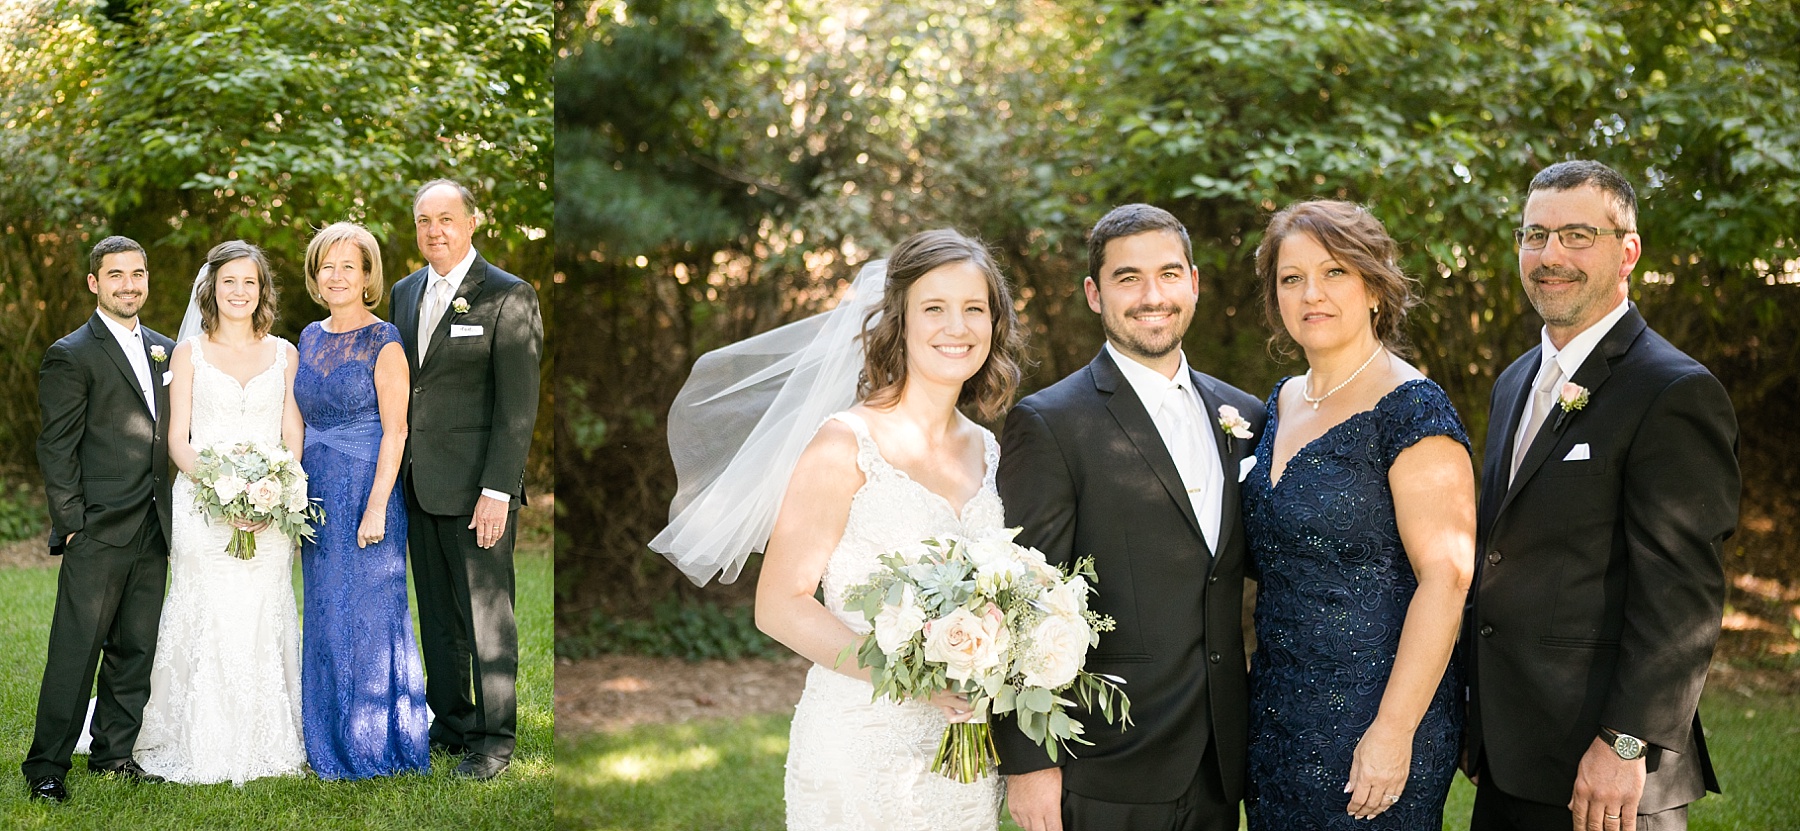 Set under the pergola, Melanie & Derek shared their vows at their Florian Gardens wedding.